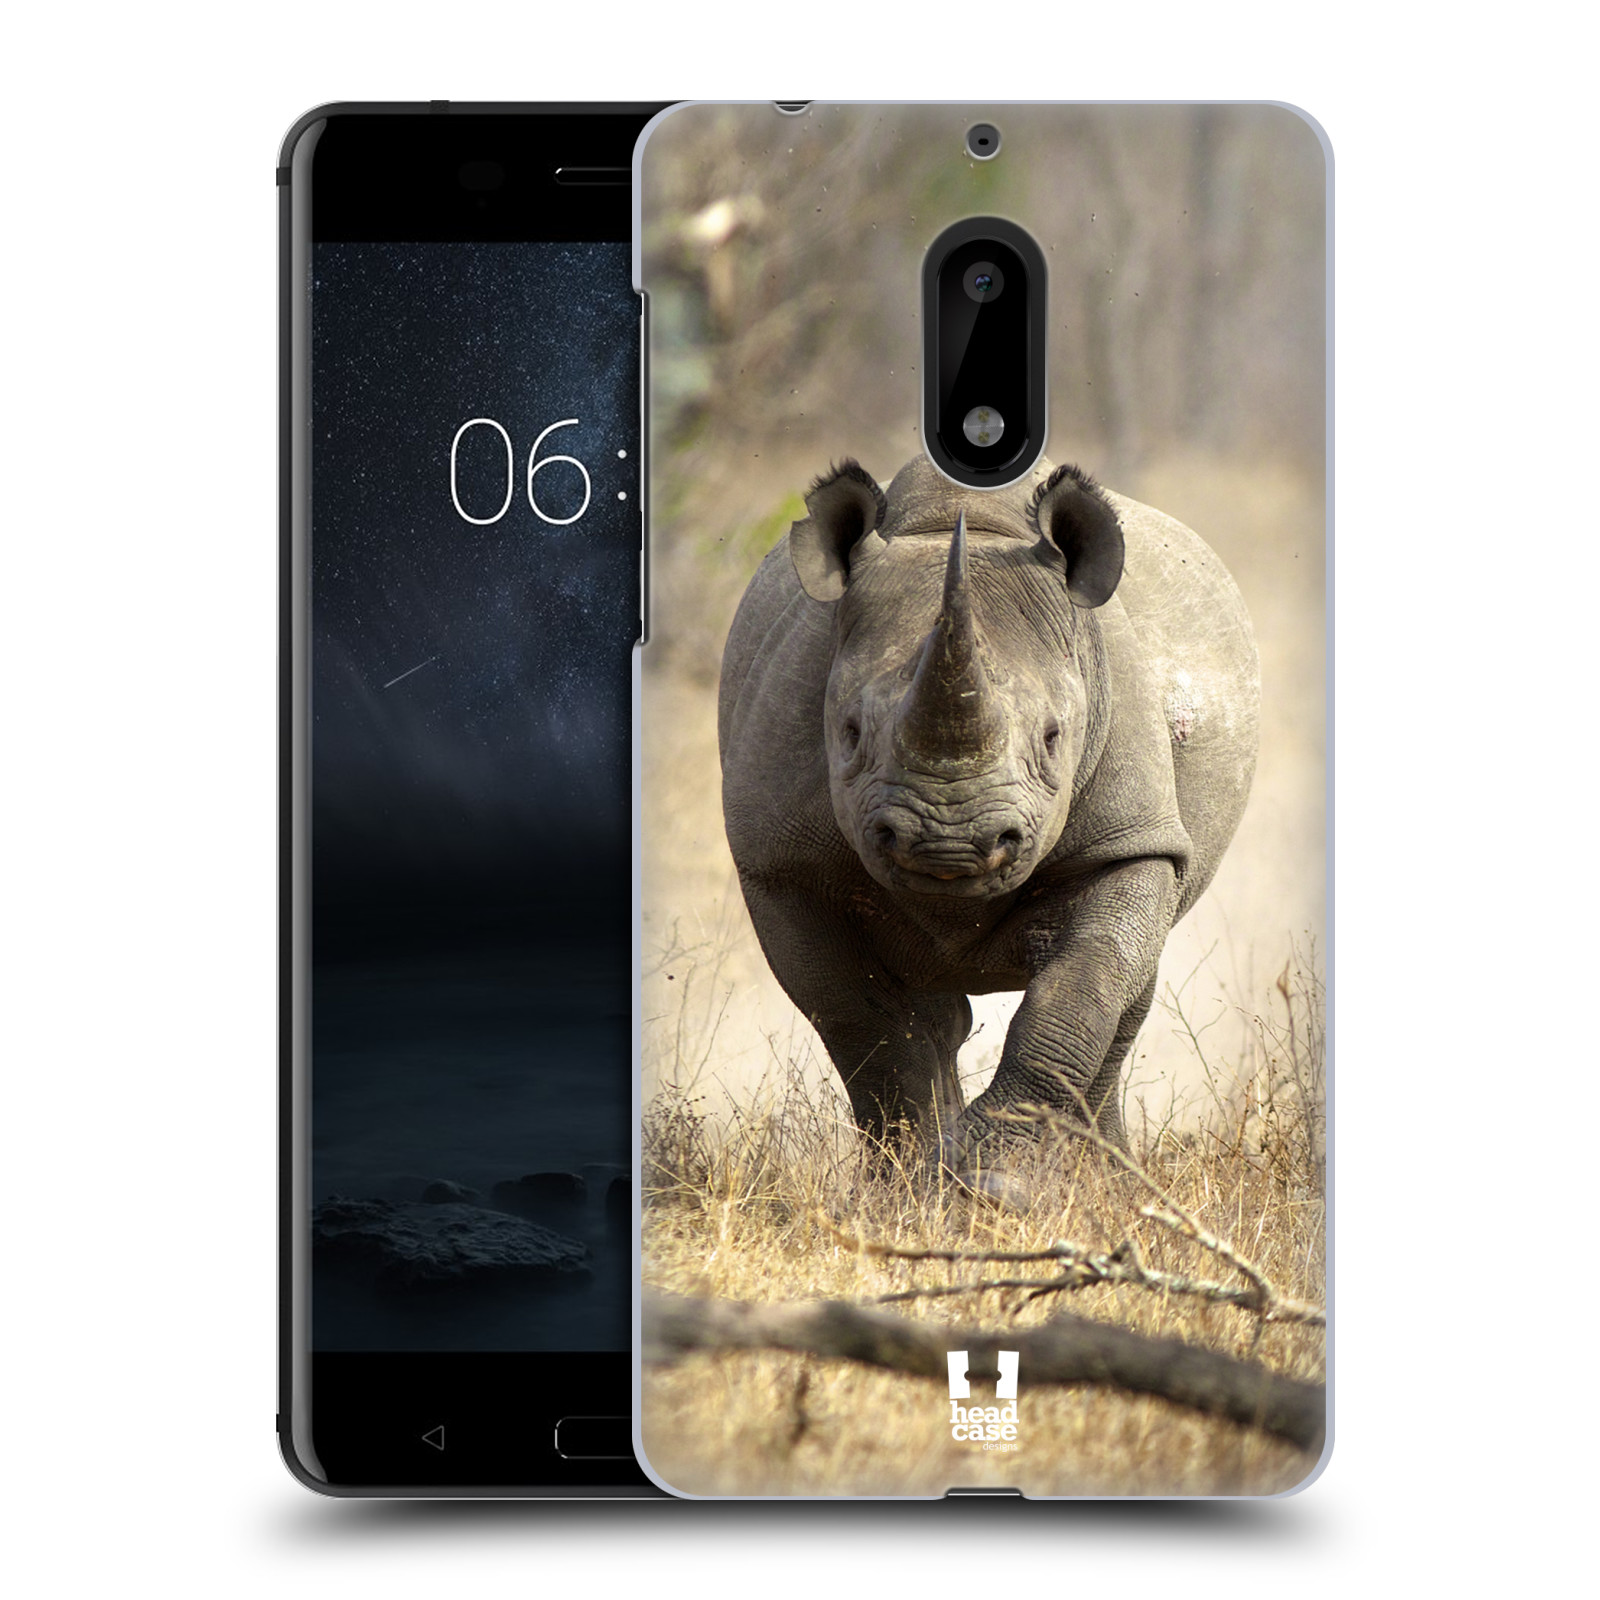 HEAD CASE plastový obal na mobil Nokia 6 vzor Divočina, Divoký život a zvířata foto AFRIKA BĚŽÍCÍ NOSOROŽEC